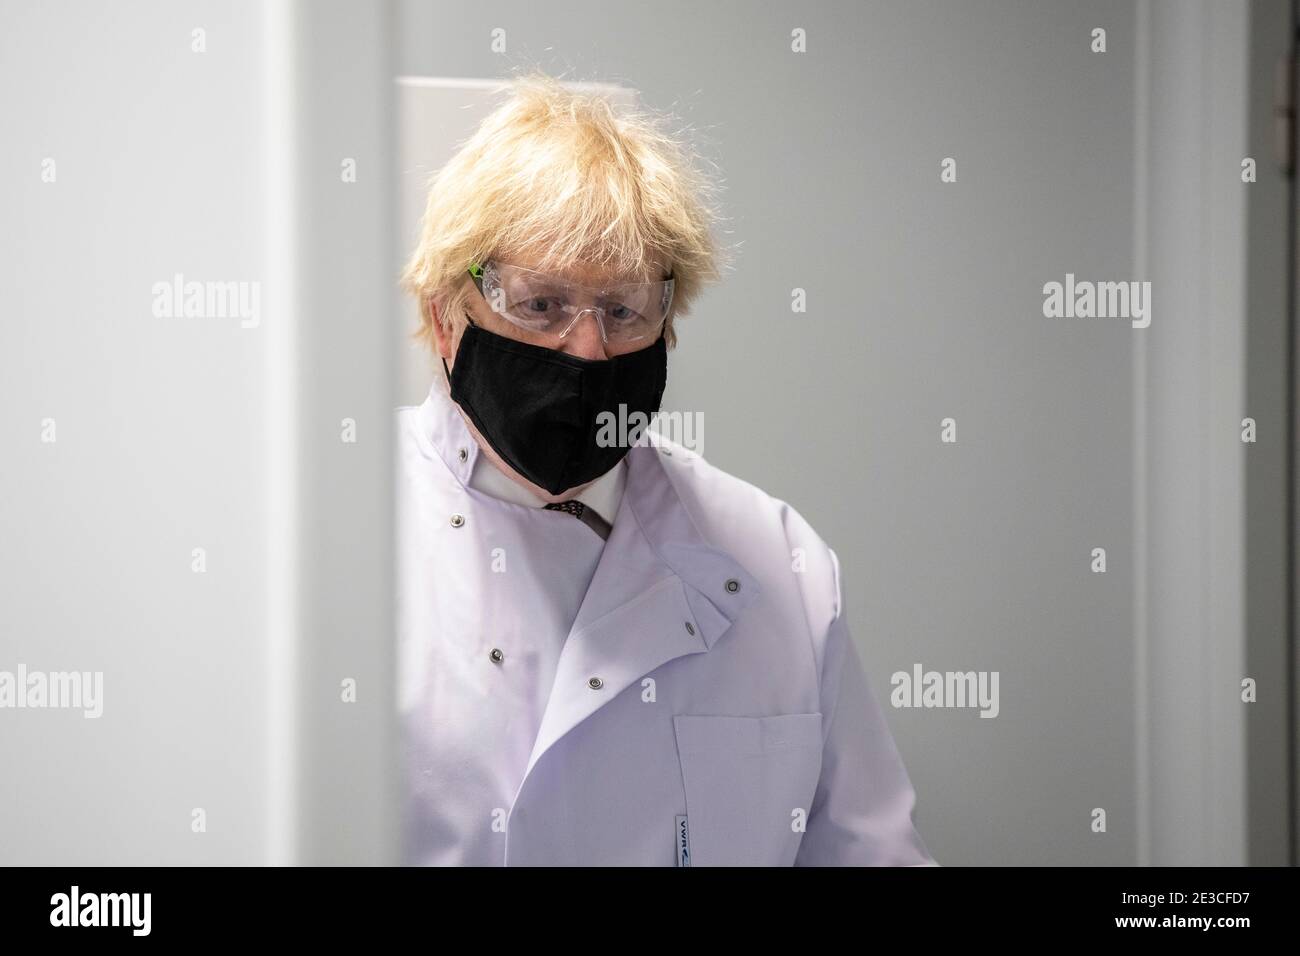 Le Premier ministre Boris Johnson entre dans le laboratoire de contrôle de la qualité, où des lots de vaccins sont testés, lors d'une visite de l'usine de fabrication du vaccin Oxford/AstraZeneca à Oxford Biomedica, dans l'Oxfordshire. Date de la photo: Lundi 18 janvier 2021. Banque D'Images